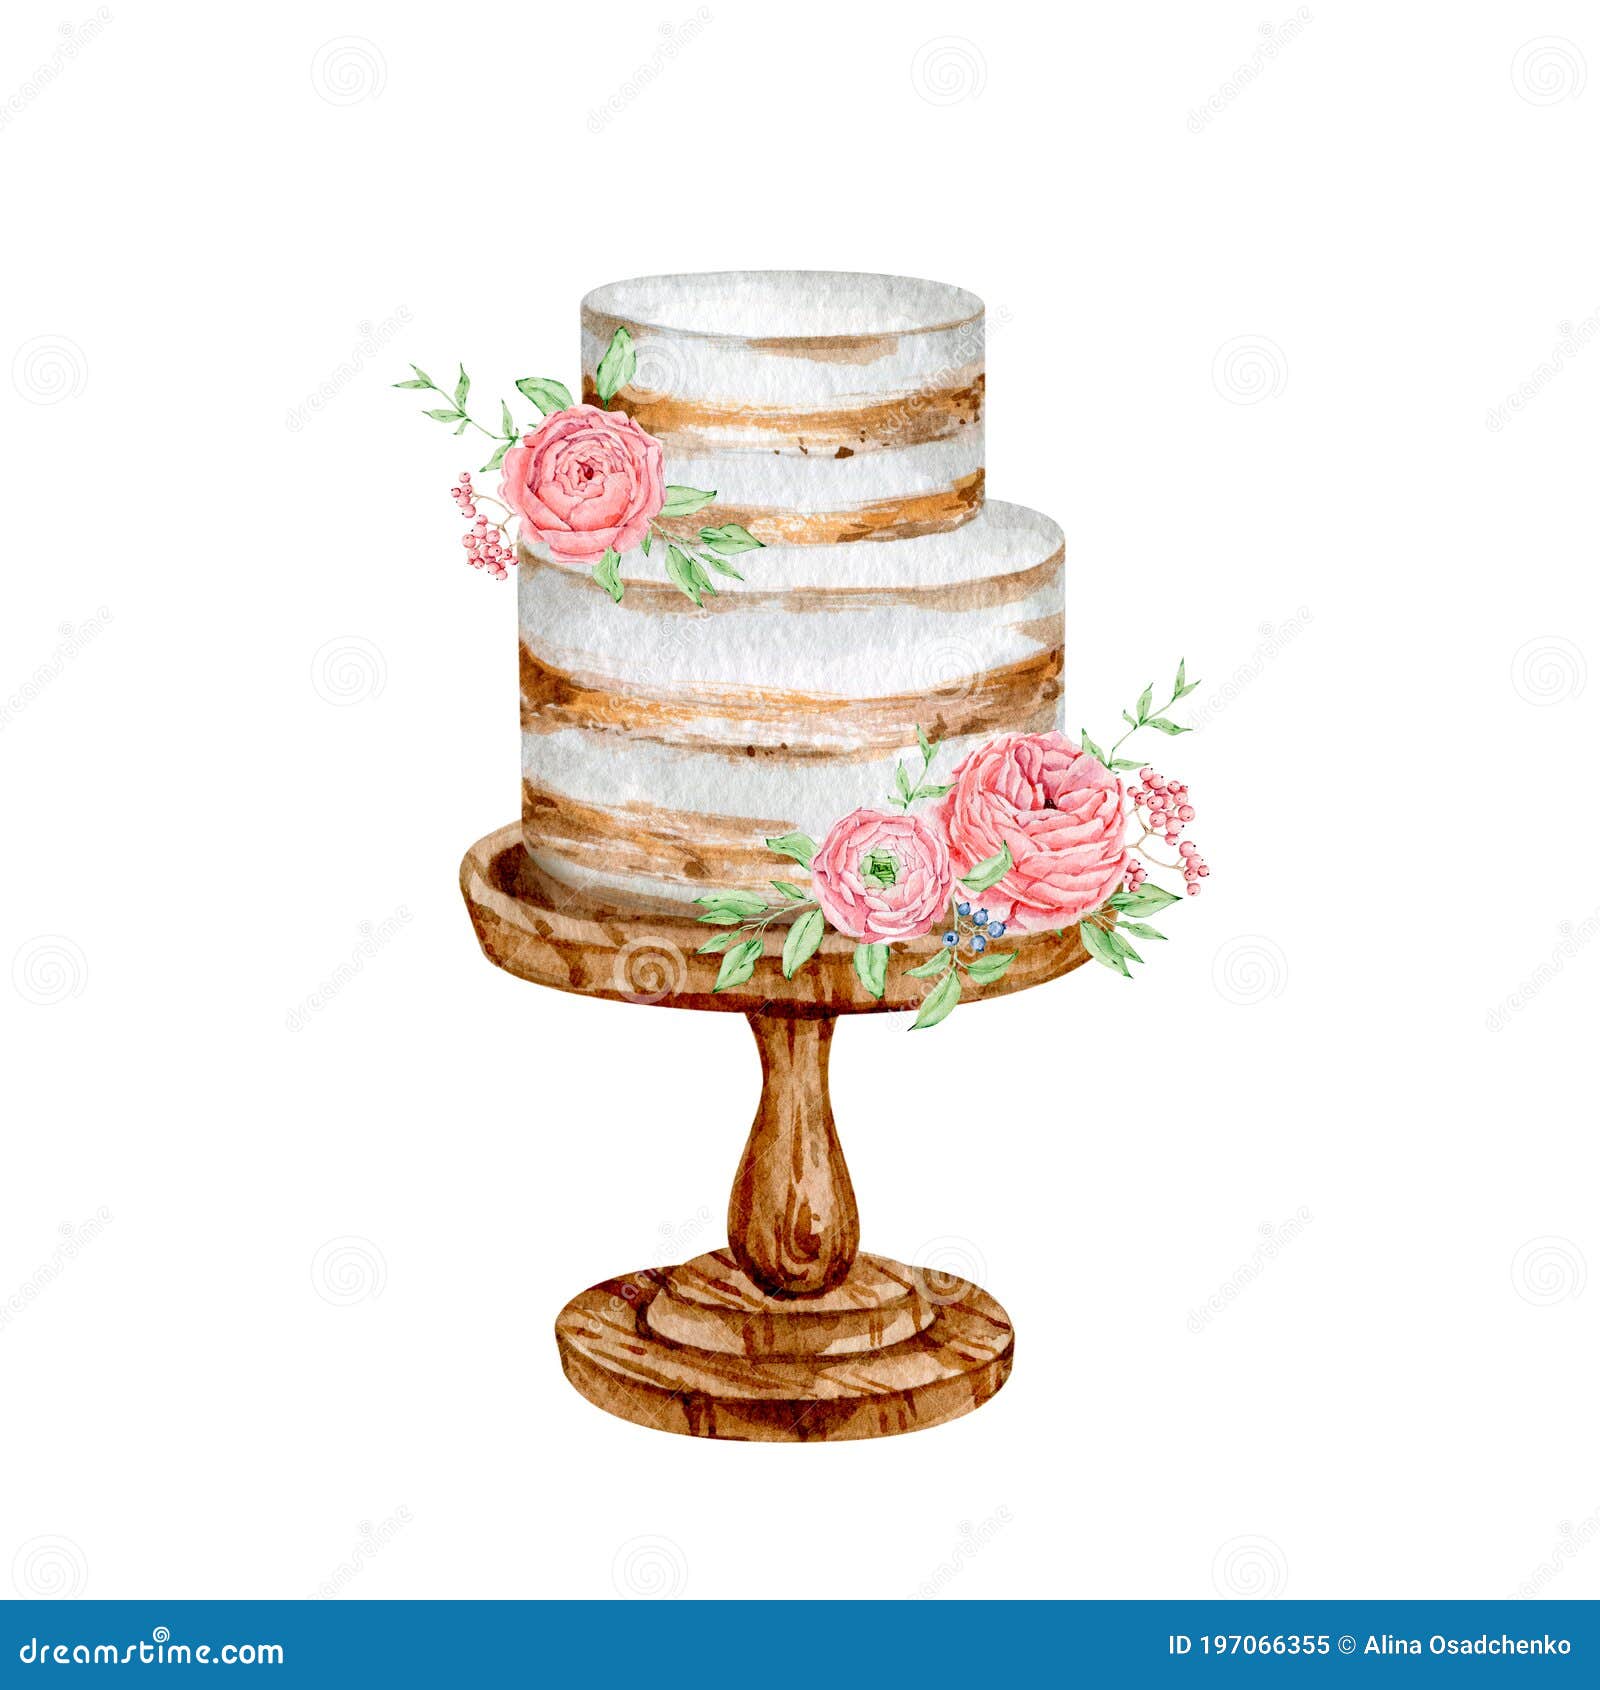 watercolor sweet cake dessert for bakery logo